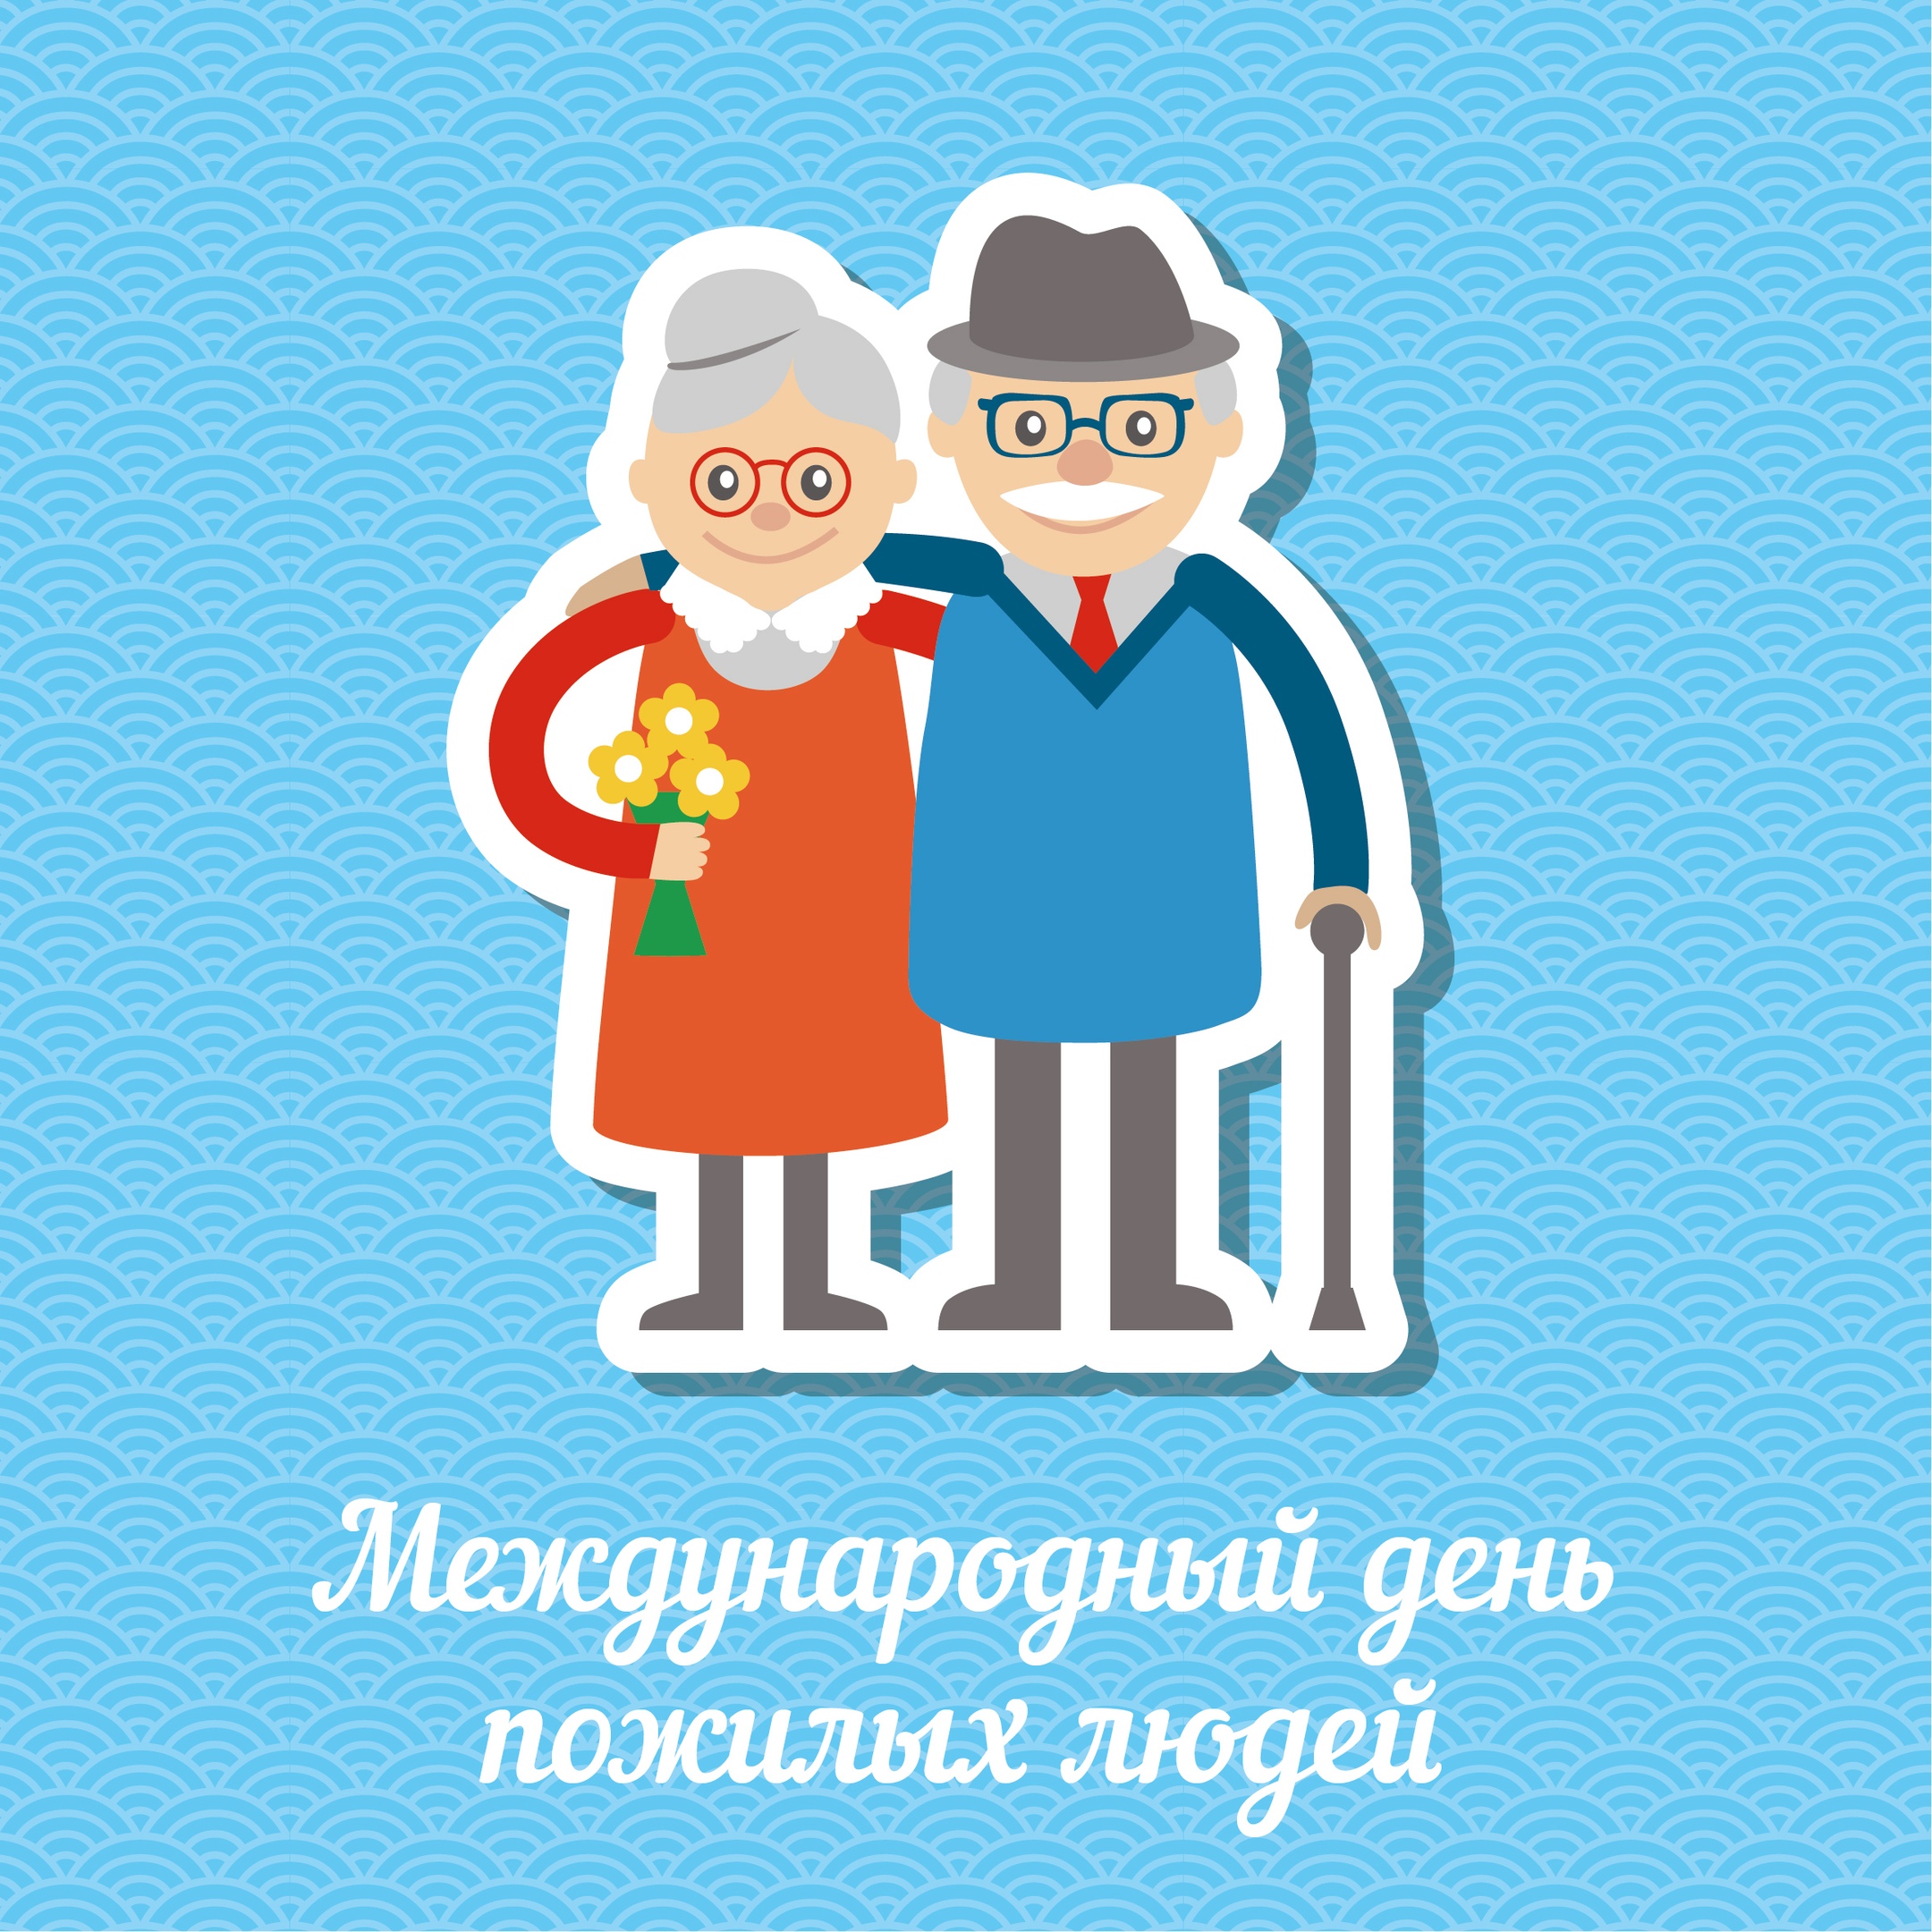 Международный день бабушек картинки. Международный день пожилых людей. Открытки для пожилых людей. Открытка ко Дню пожилых людей. Открытка ко Дню престарелых.